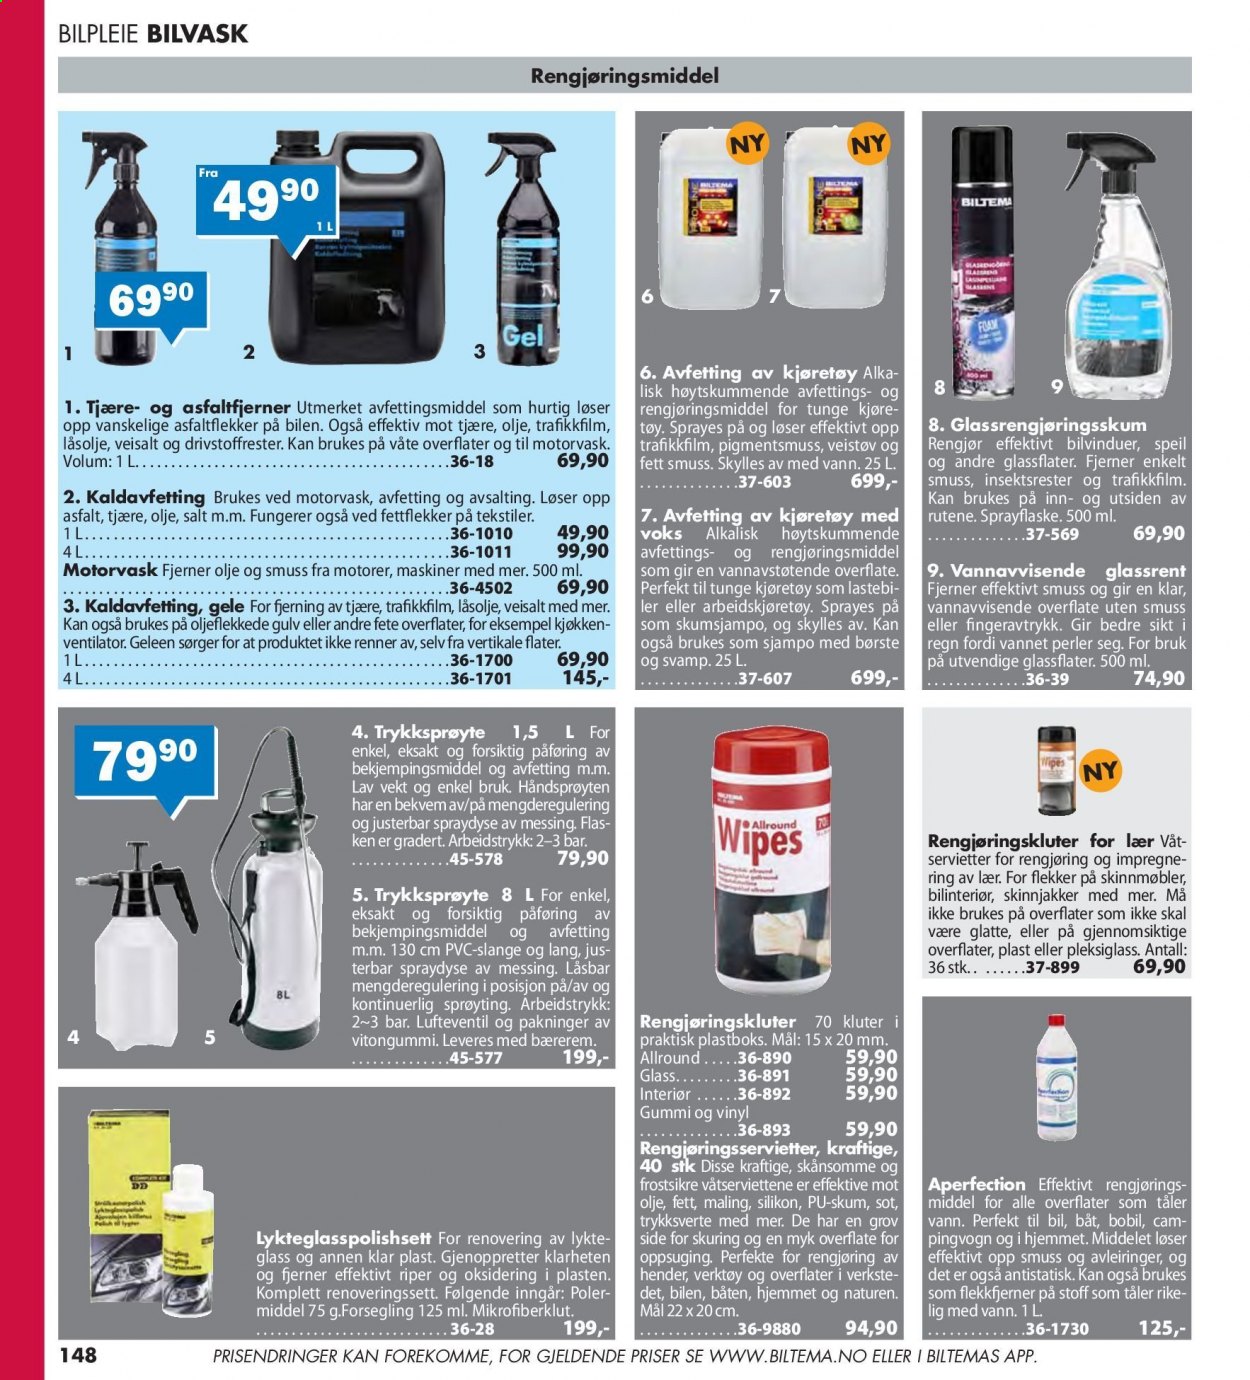 thumbnail - Kundeavis Biltema - Produkter fra tilbudsaviser - rengjøringsprodukter, gulv, verktøy. Side 148.